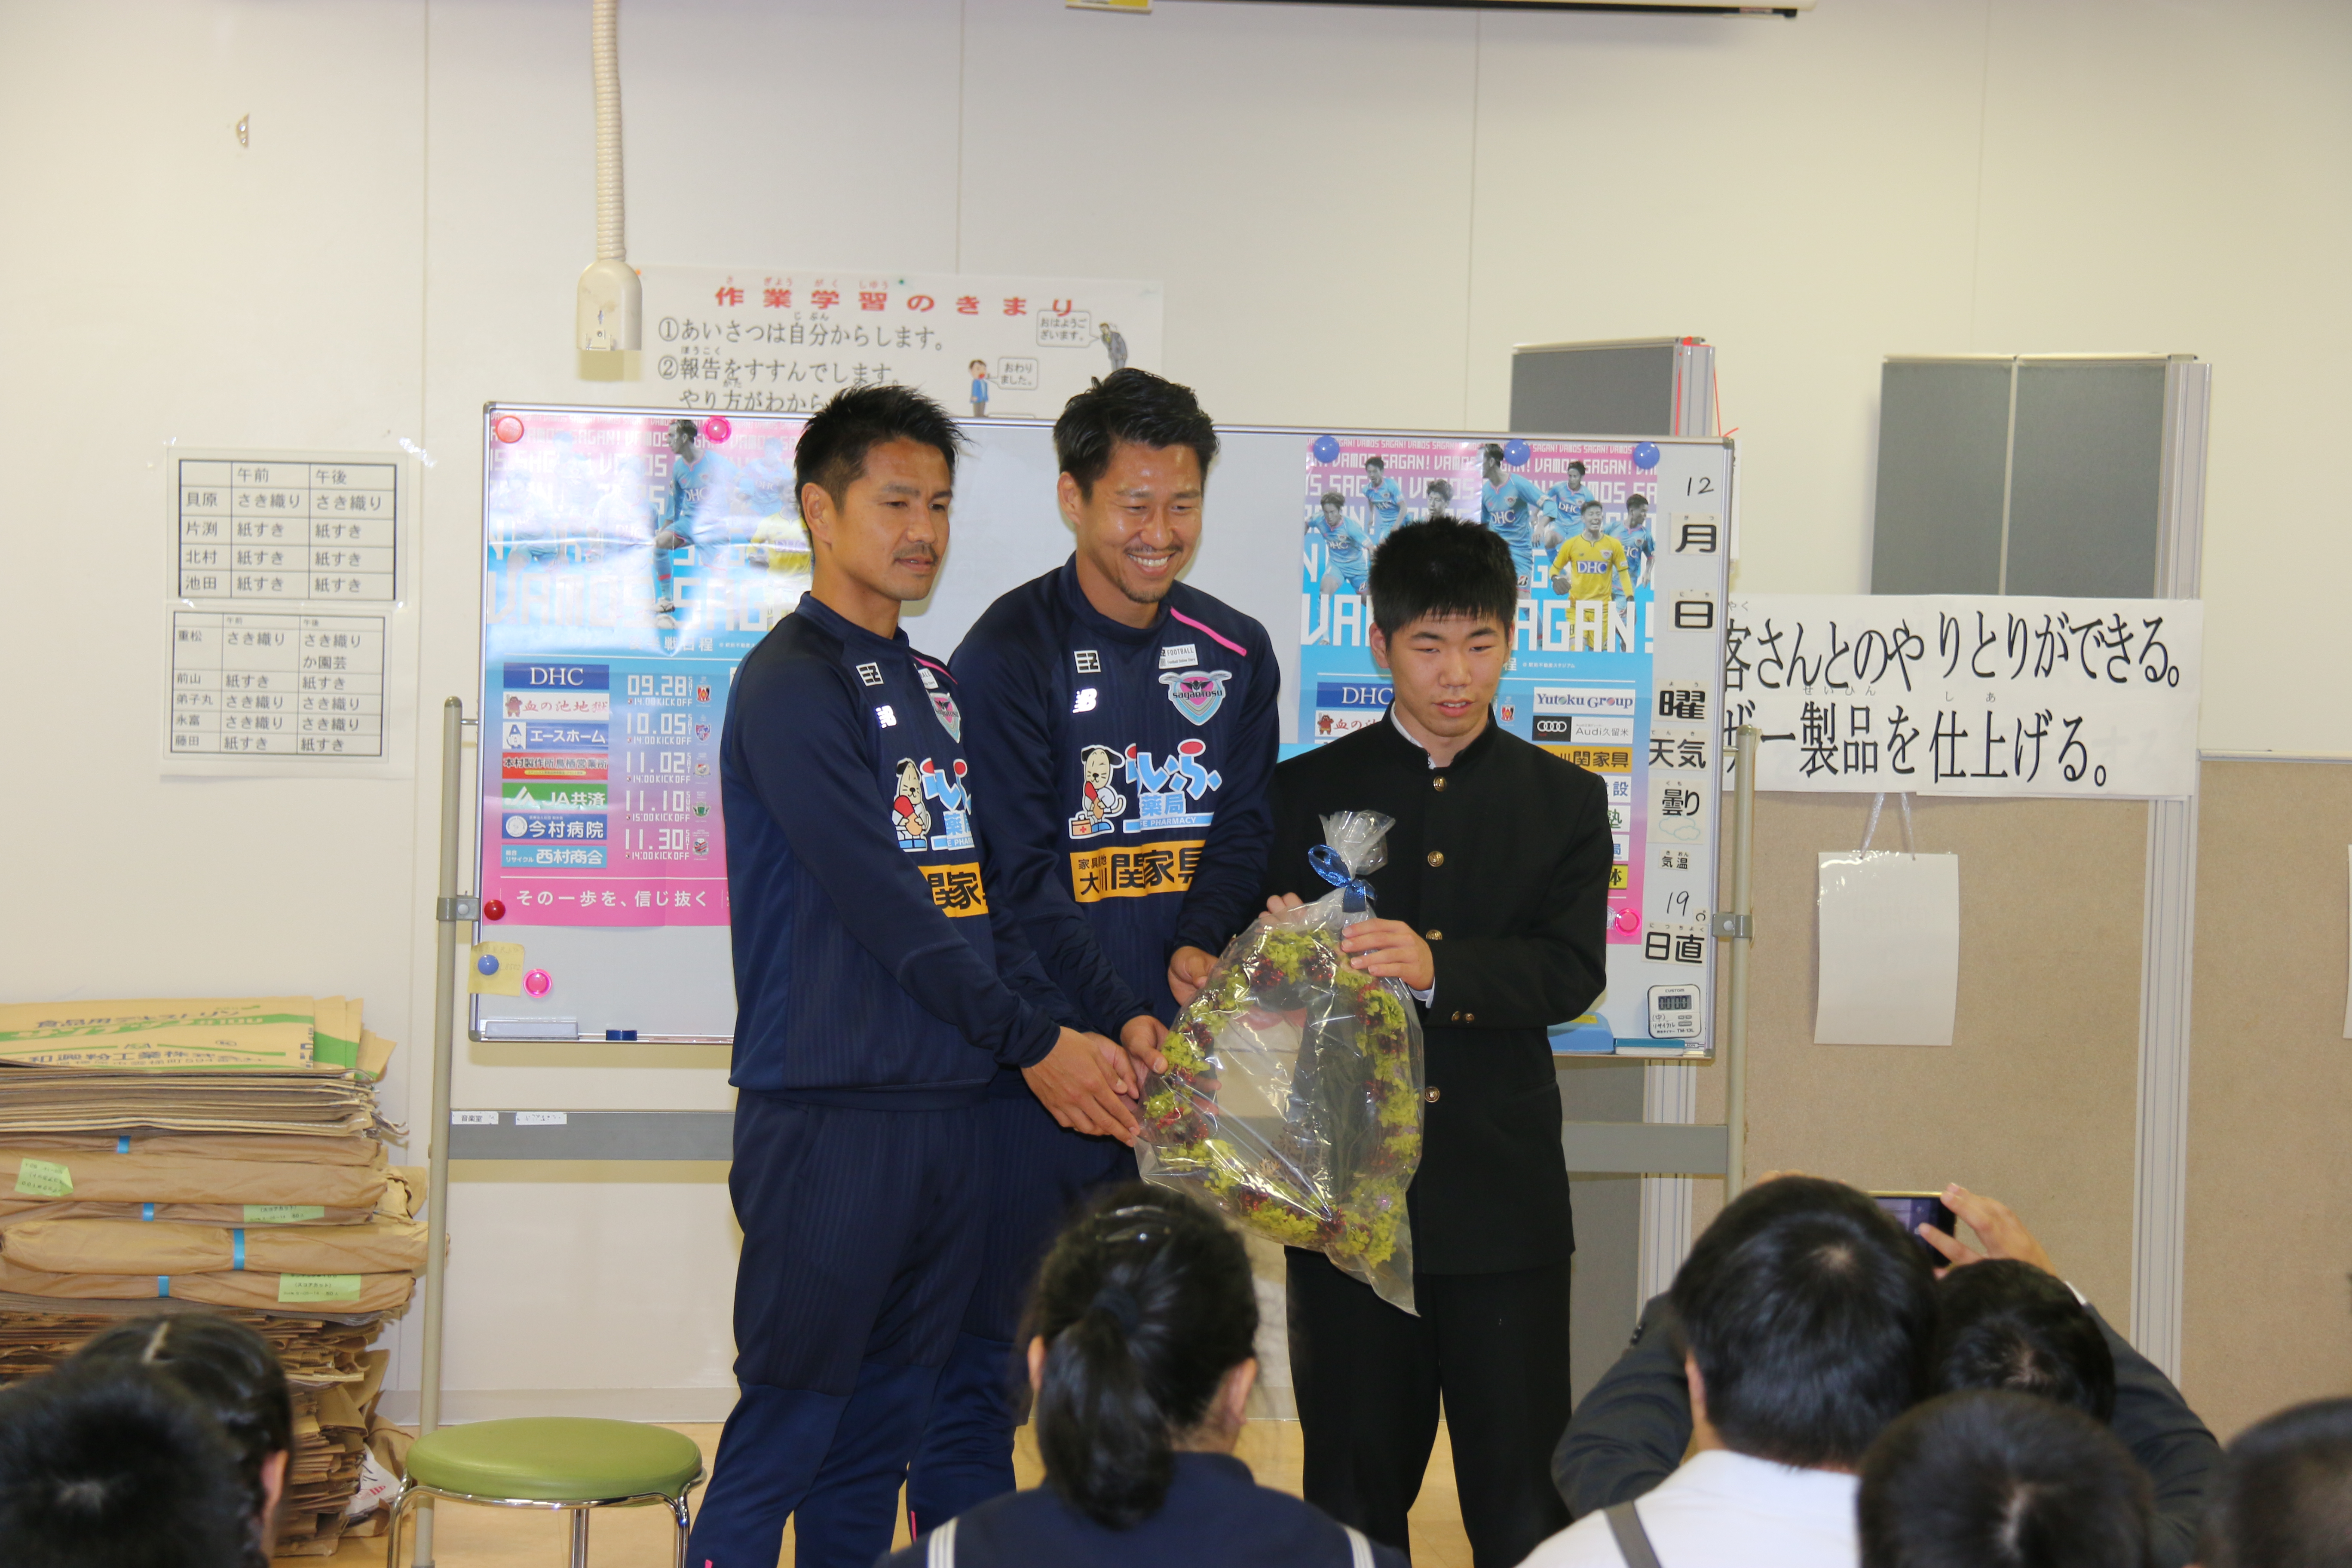 サガン鳥栖の選手が 勝ち点米 贈呈 12月3日 佐賀大学広報室